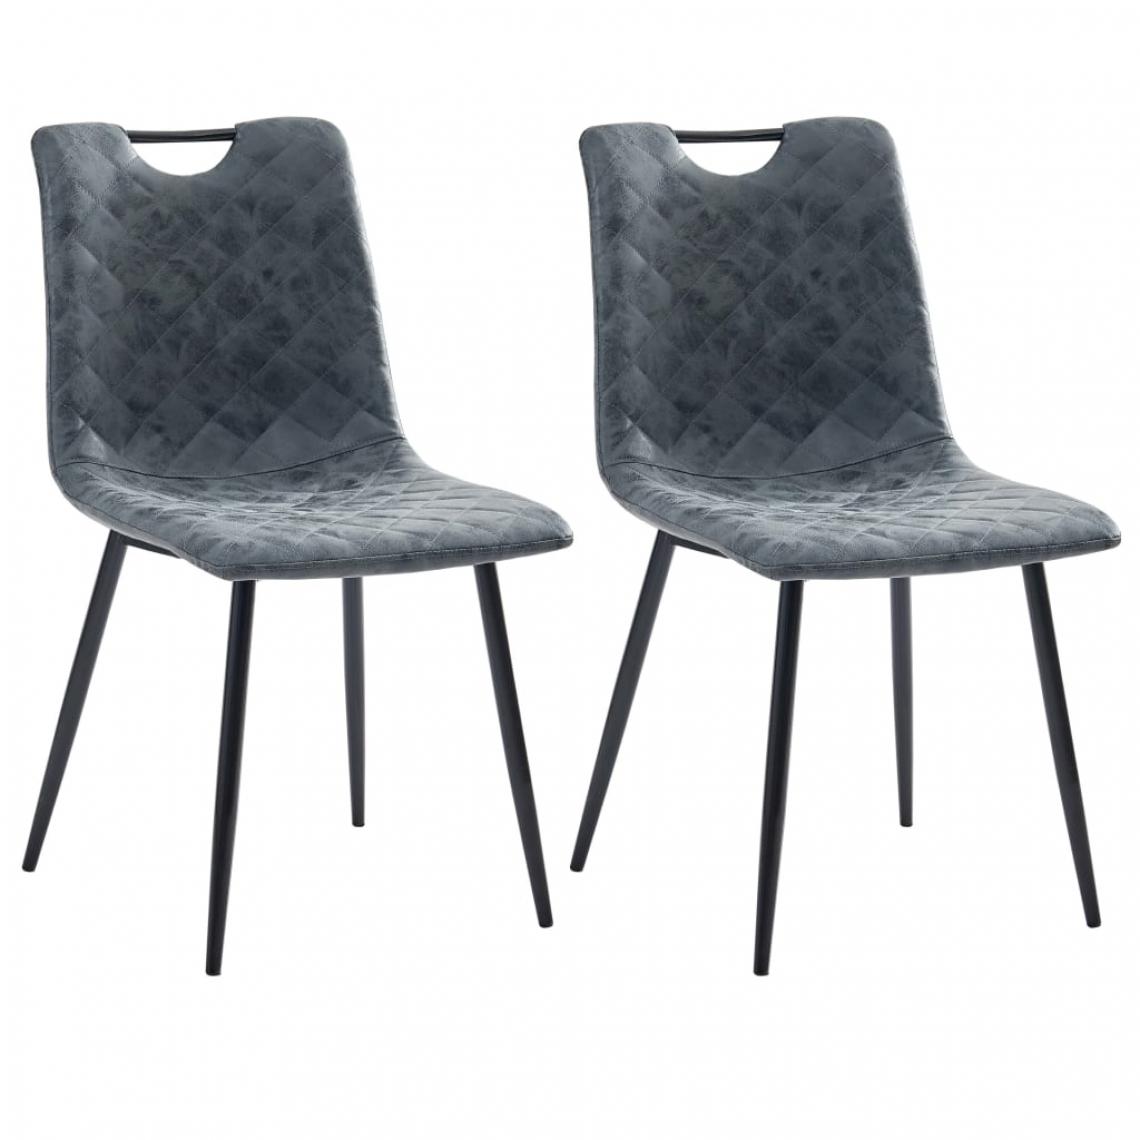 Icaverne - Stylé Fauteuils et chaises reference Port Moresby Chaises de salle à manger 2 pcs Noir Similicuir - Chaises